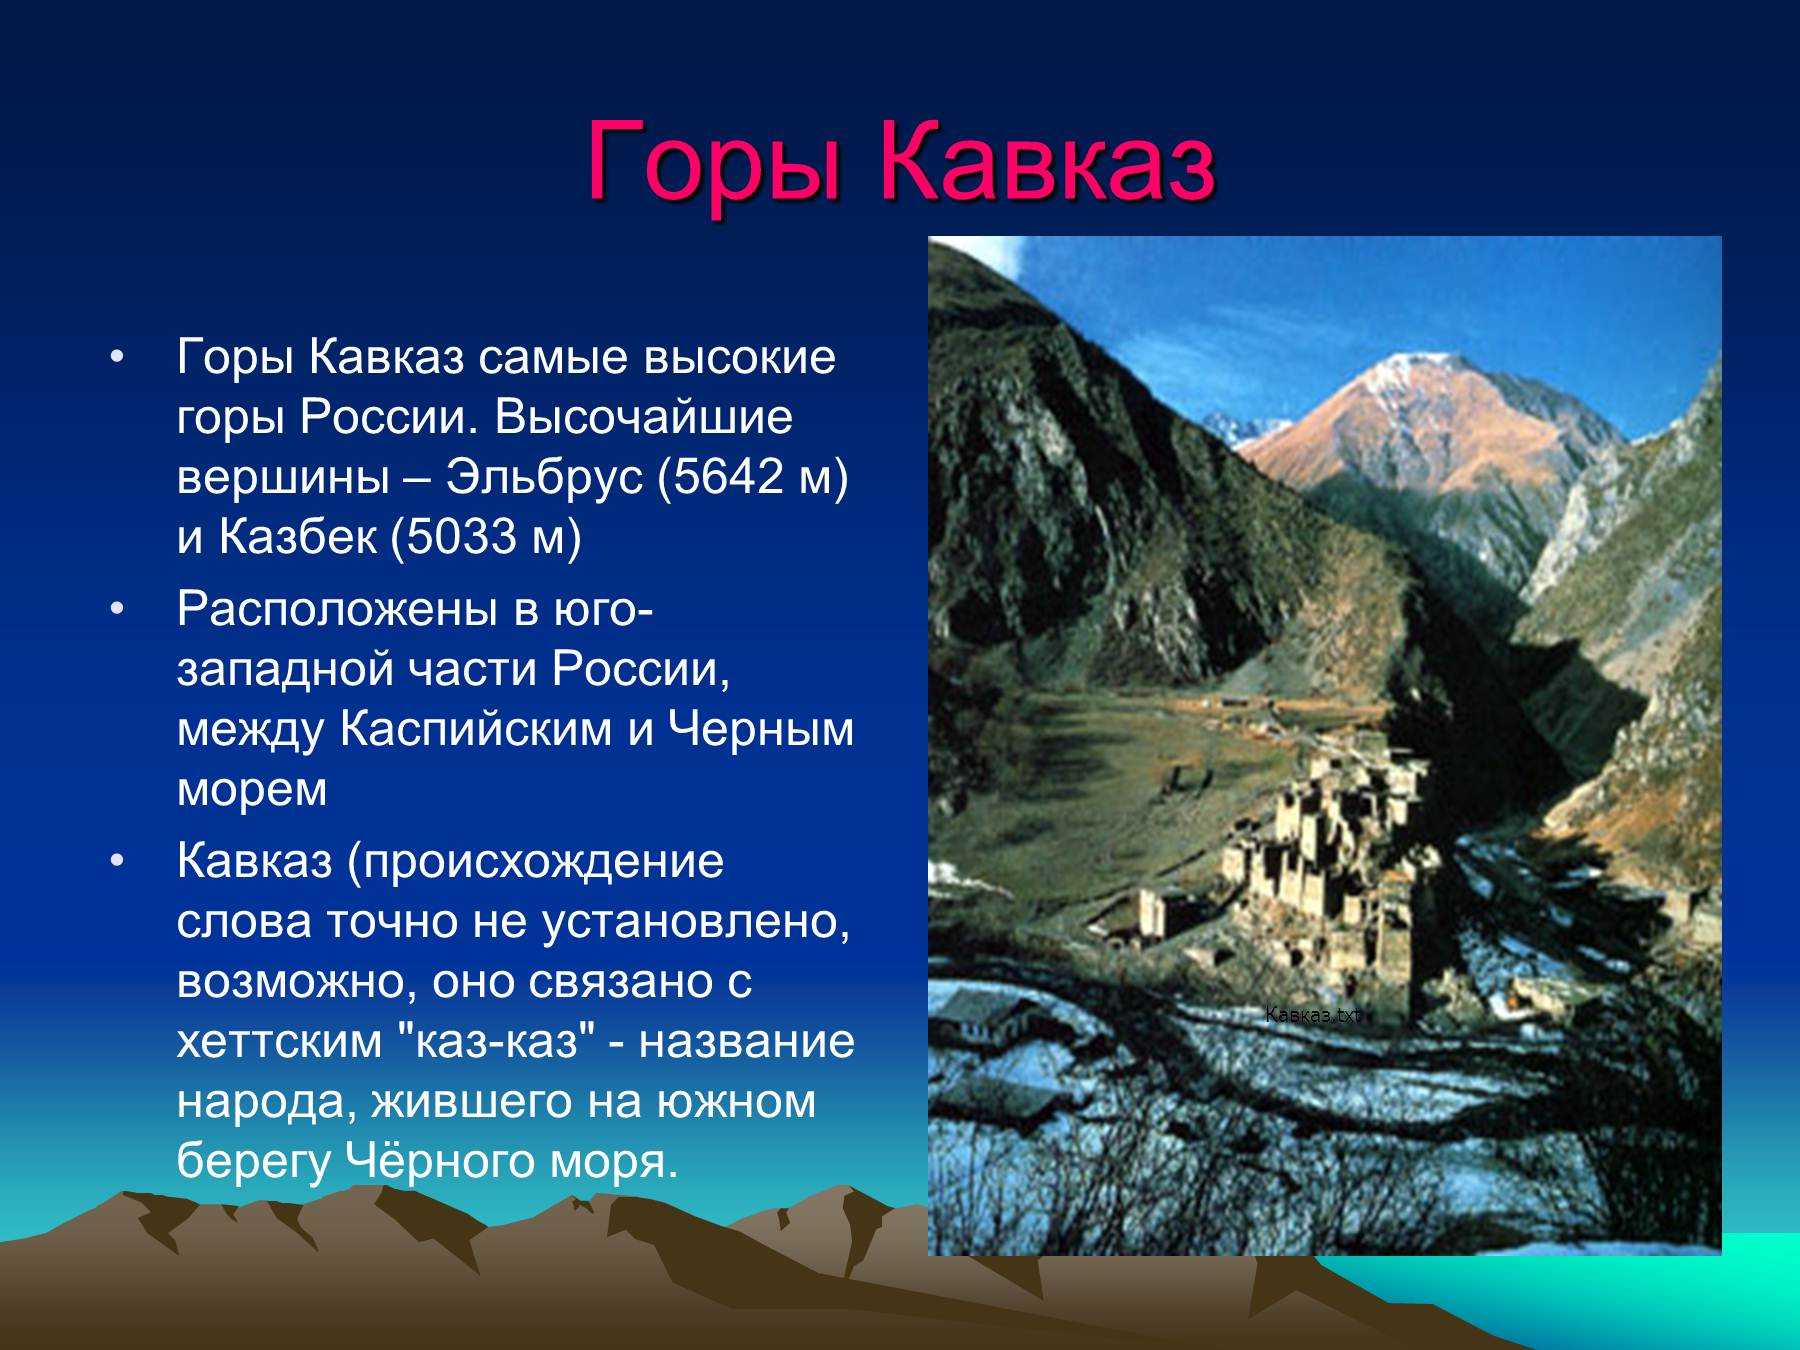 Сообщение про гору Казбек